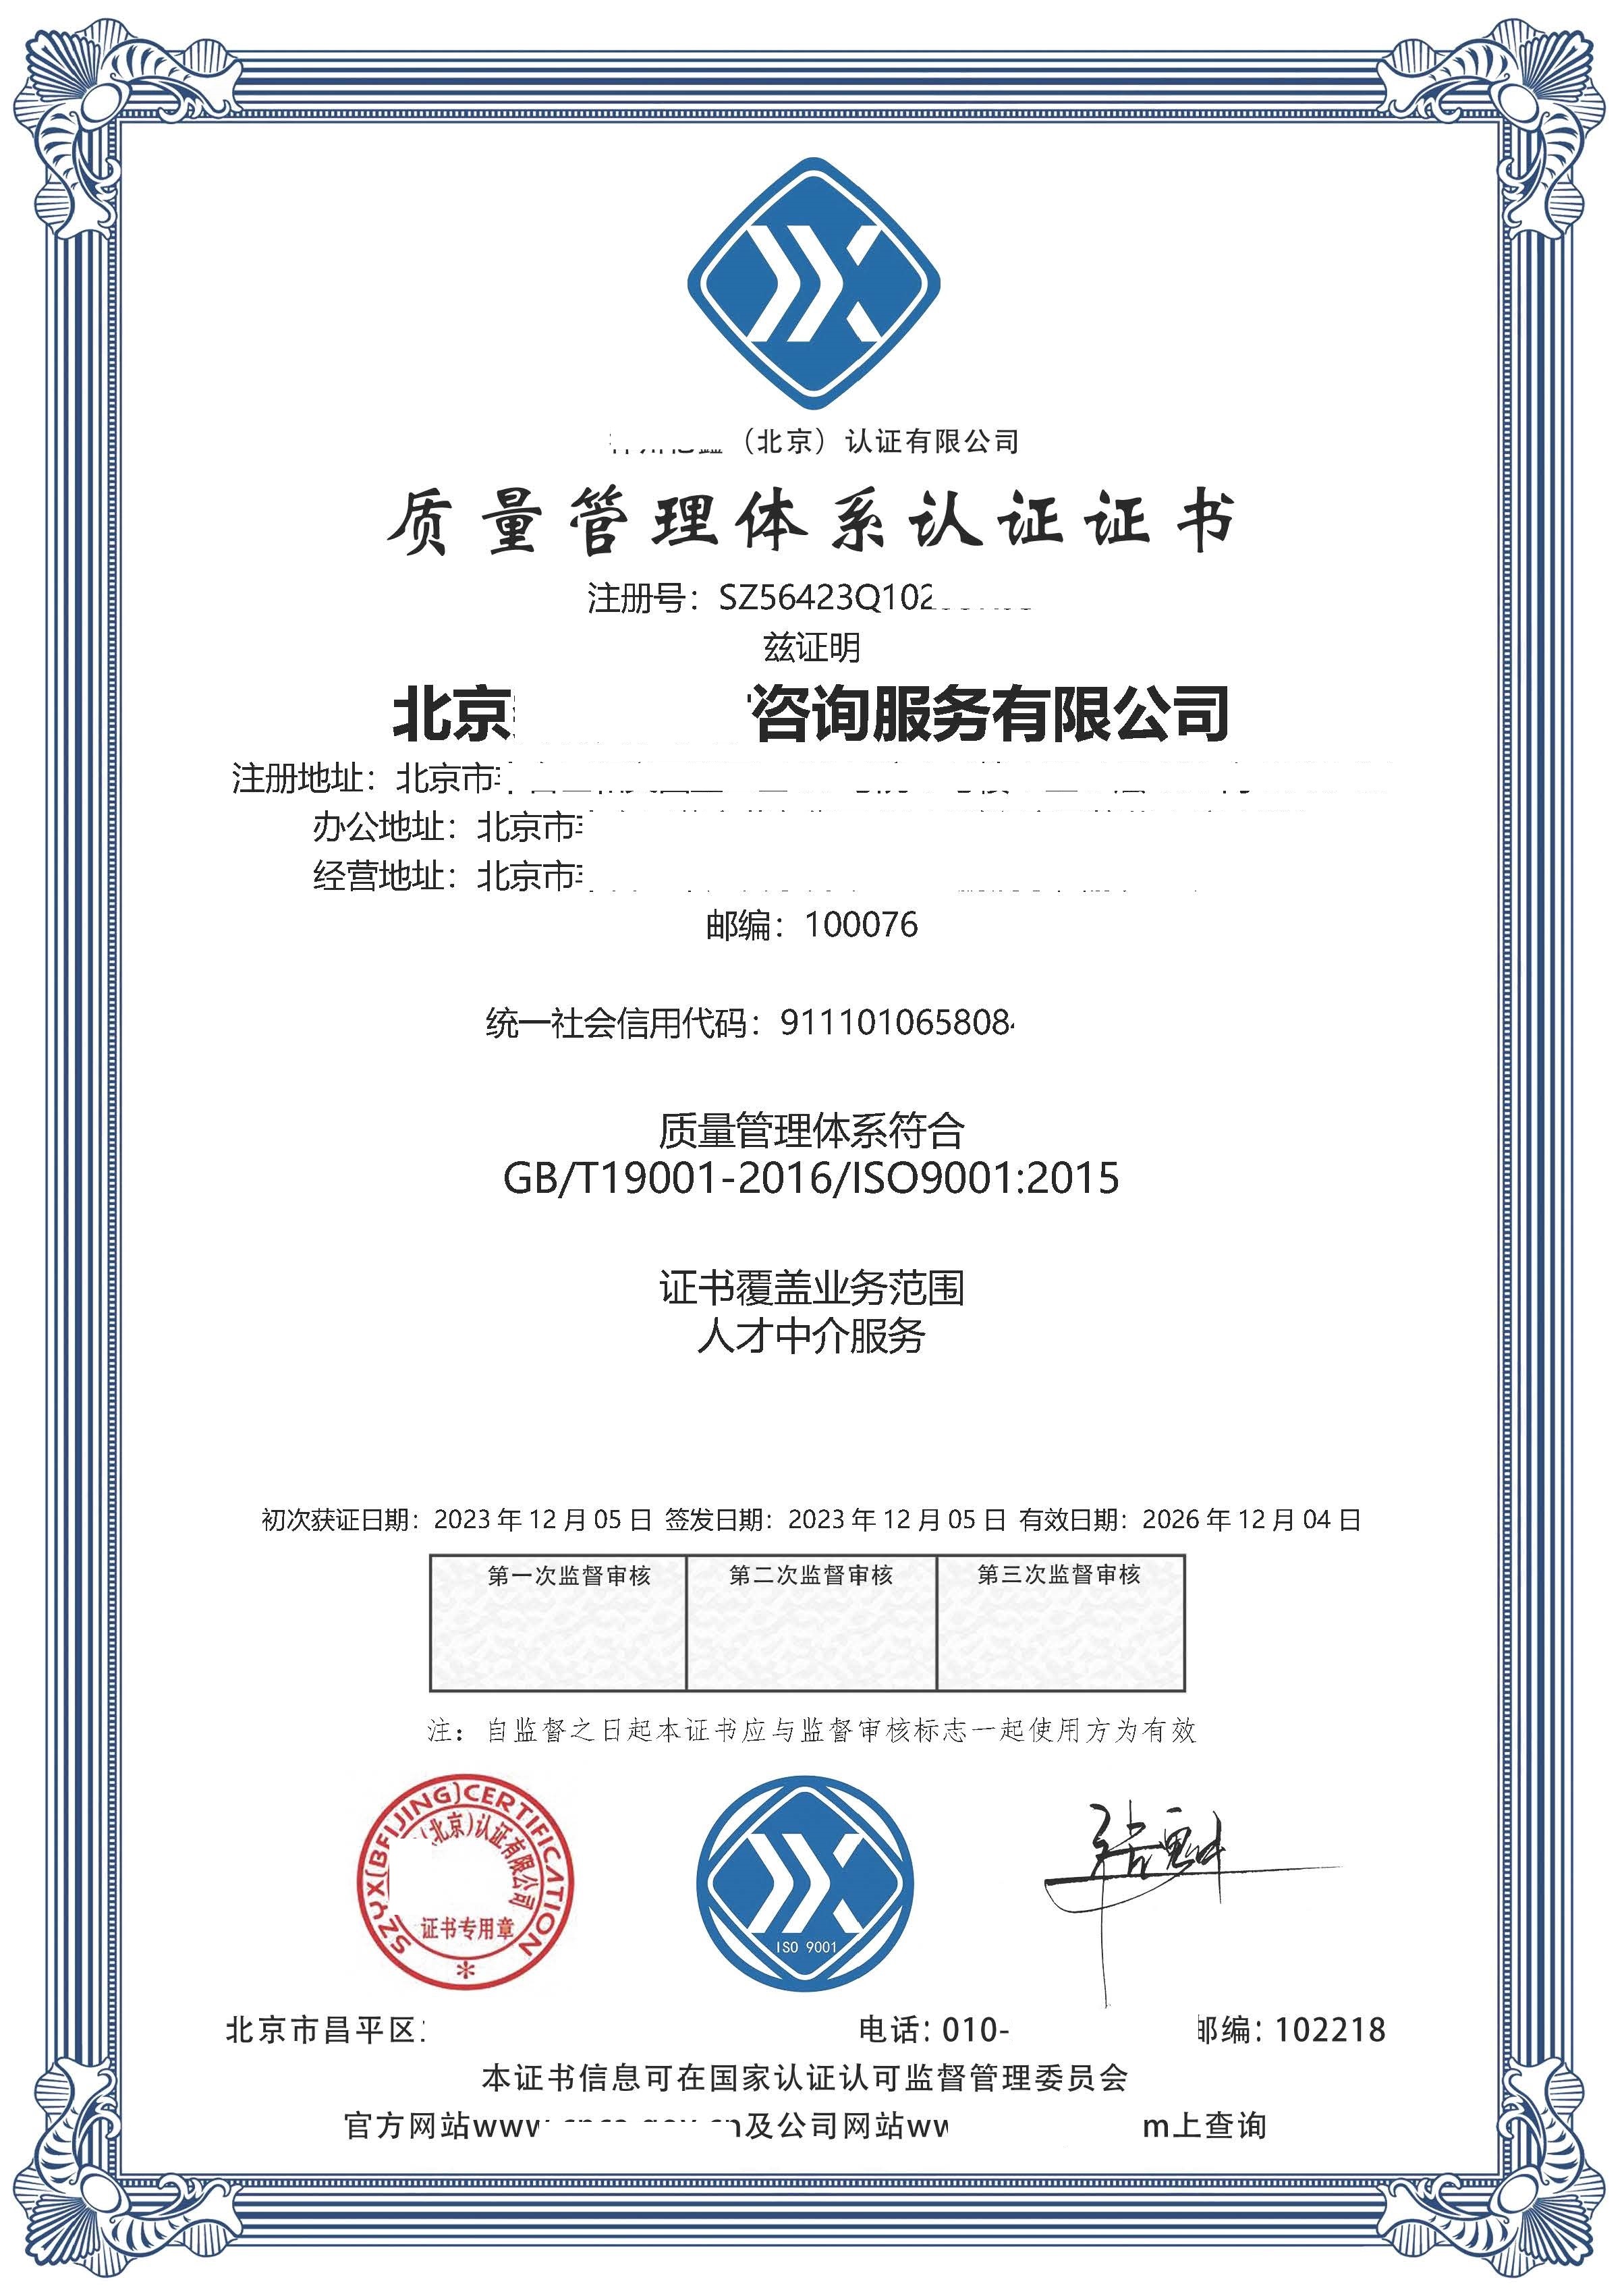 恭喜  北京****咨询服务有限公司  获得ISO9001质量管理体系认证证书